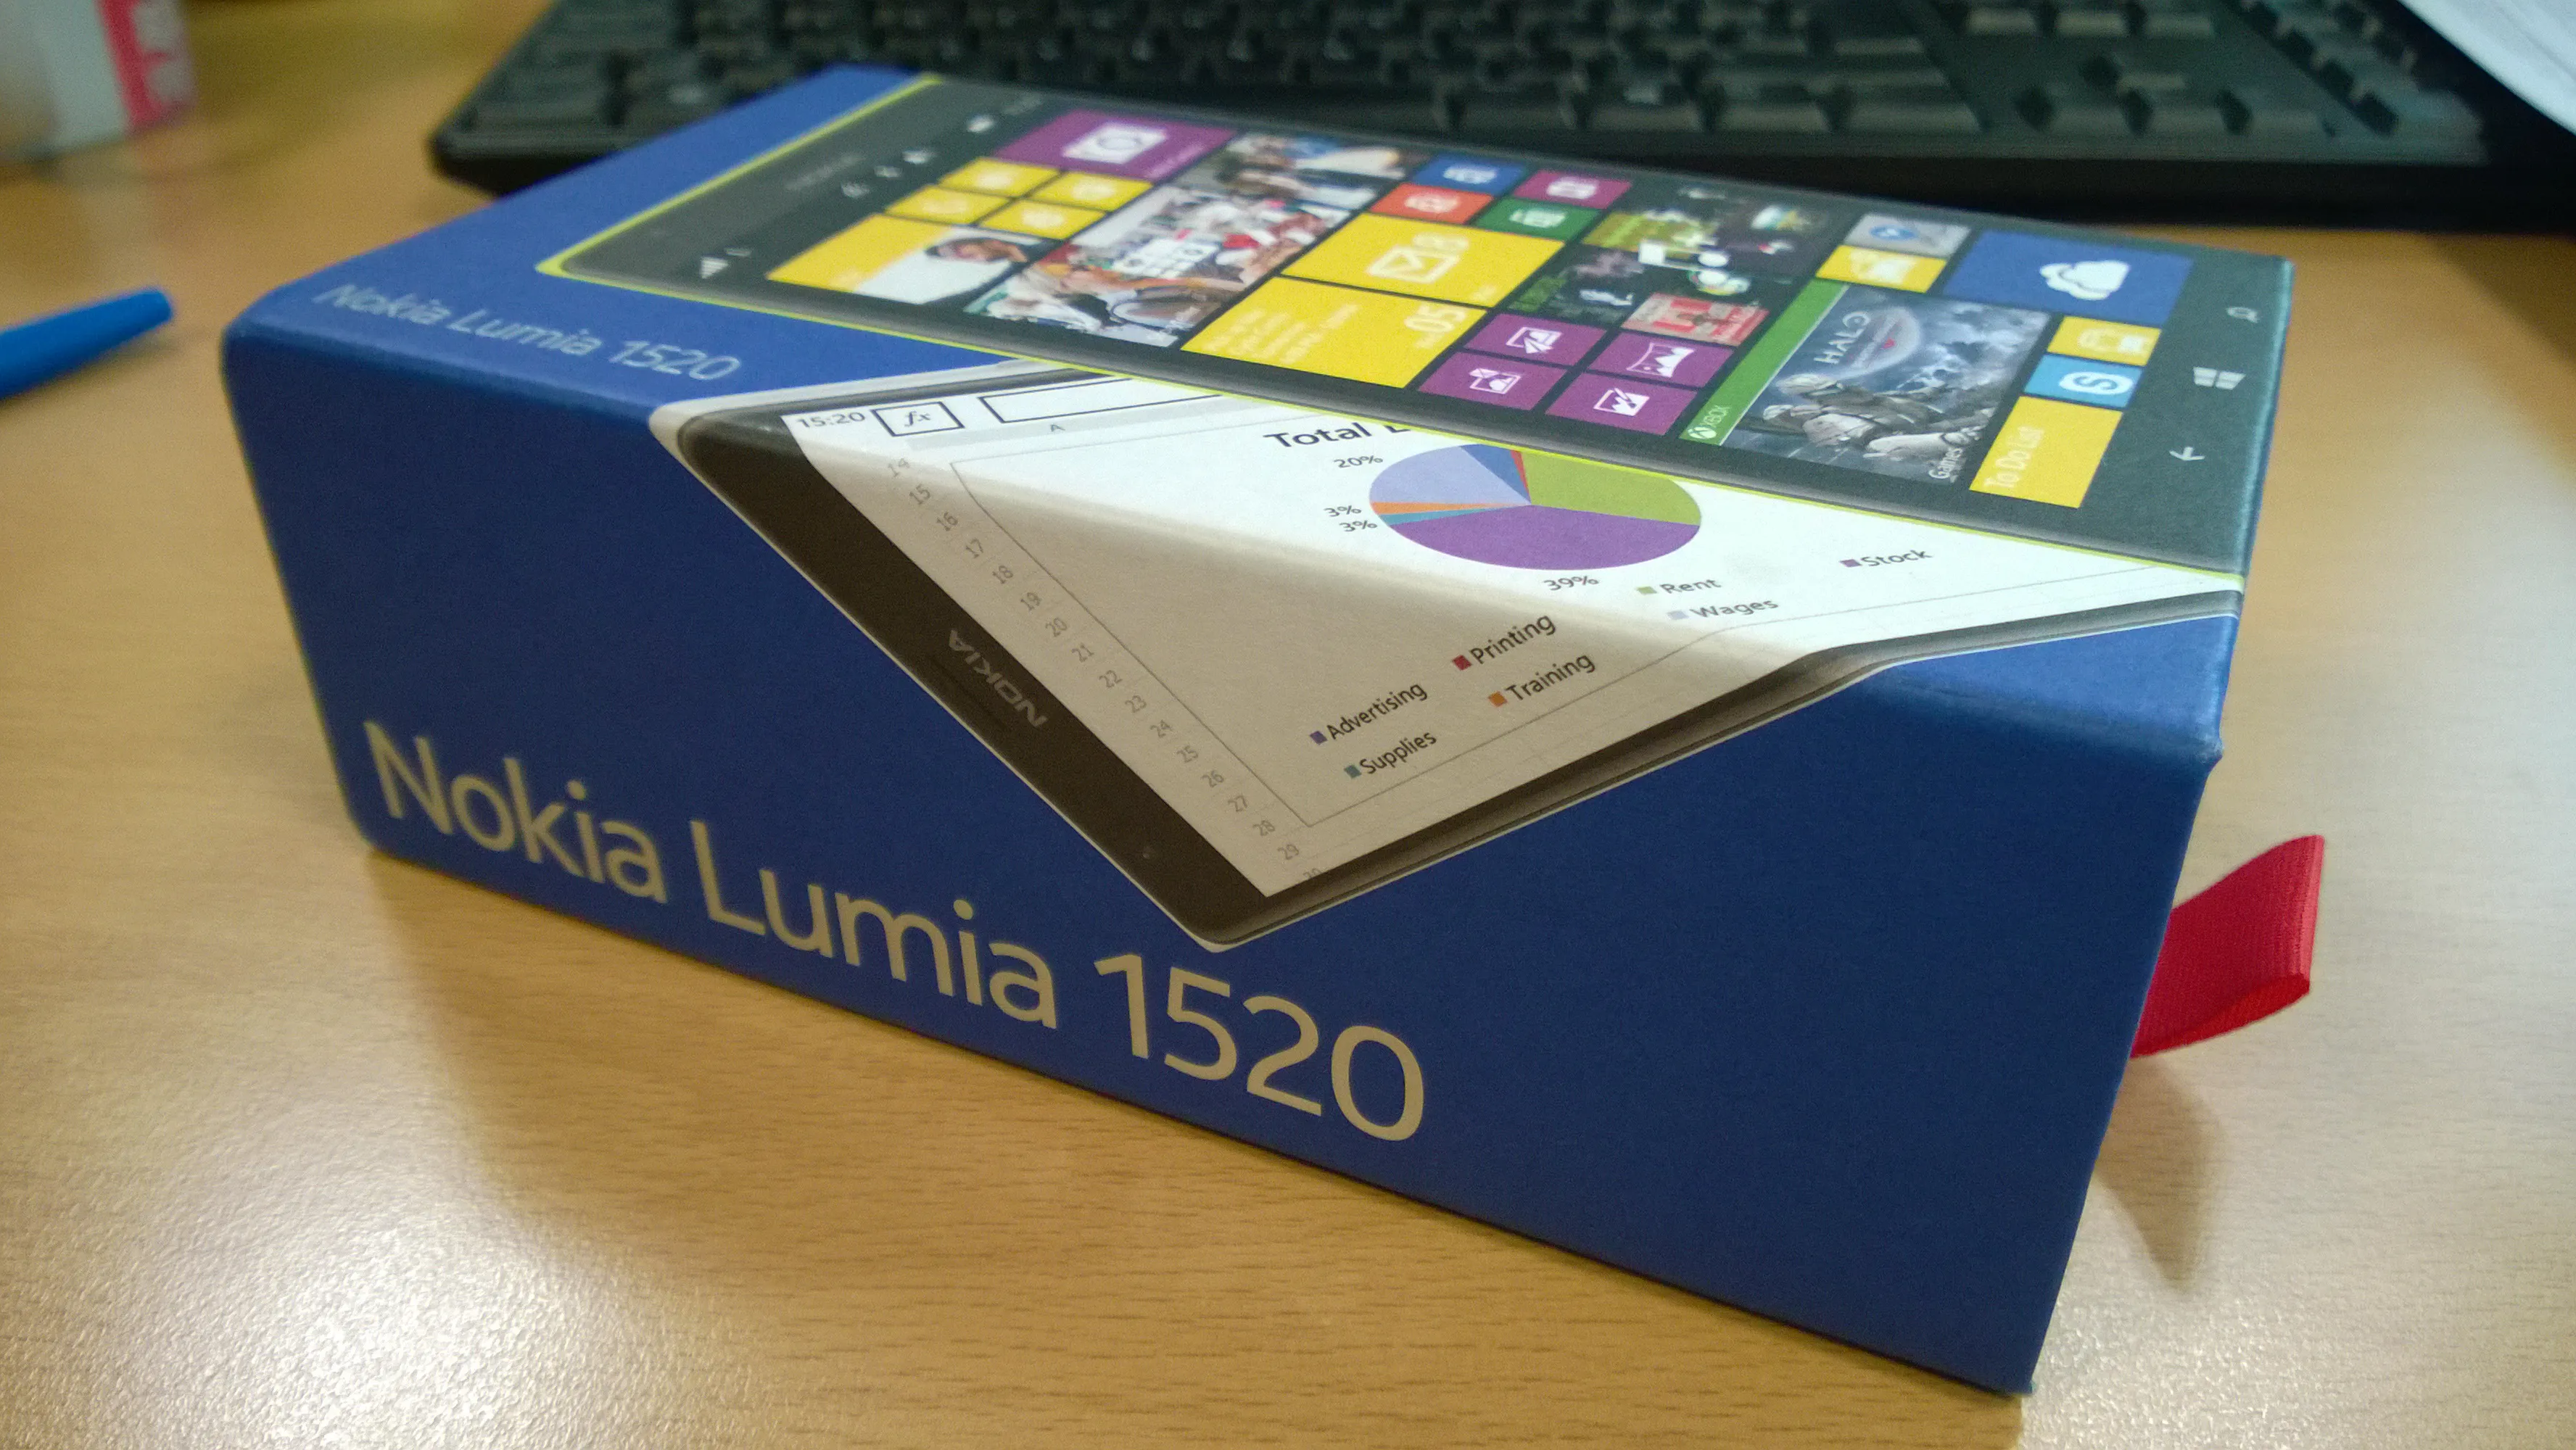 Nokia lumia 1520 - photo 1